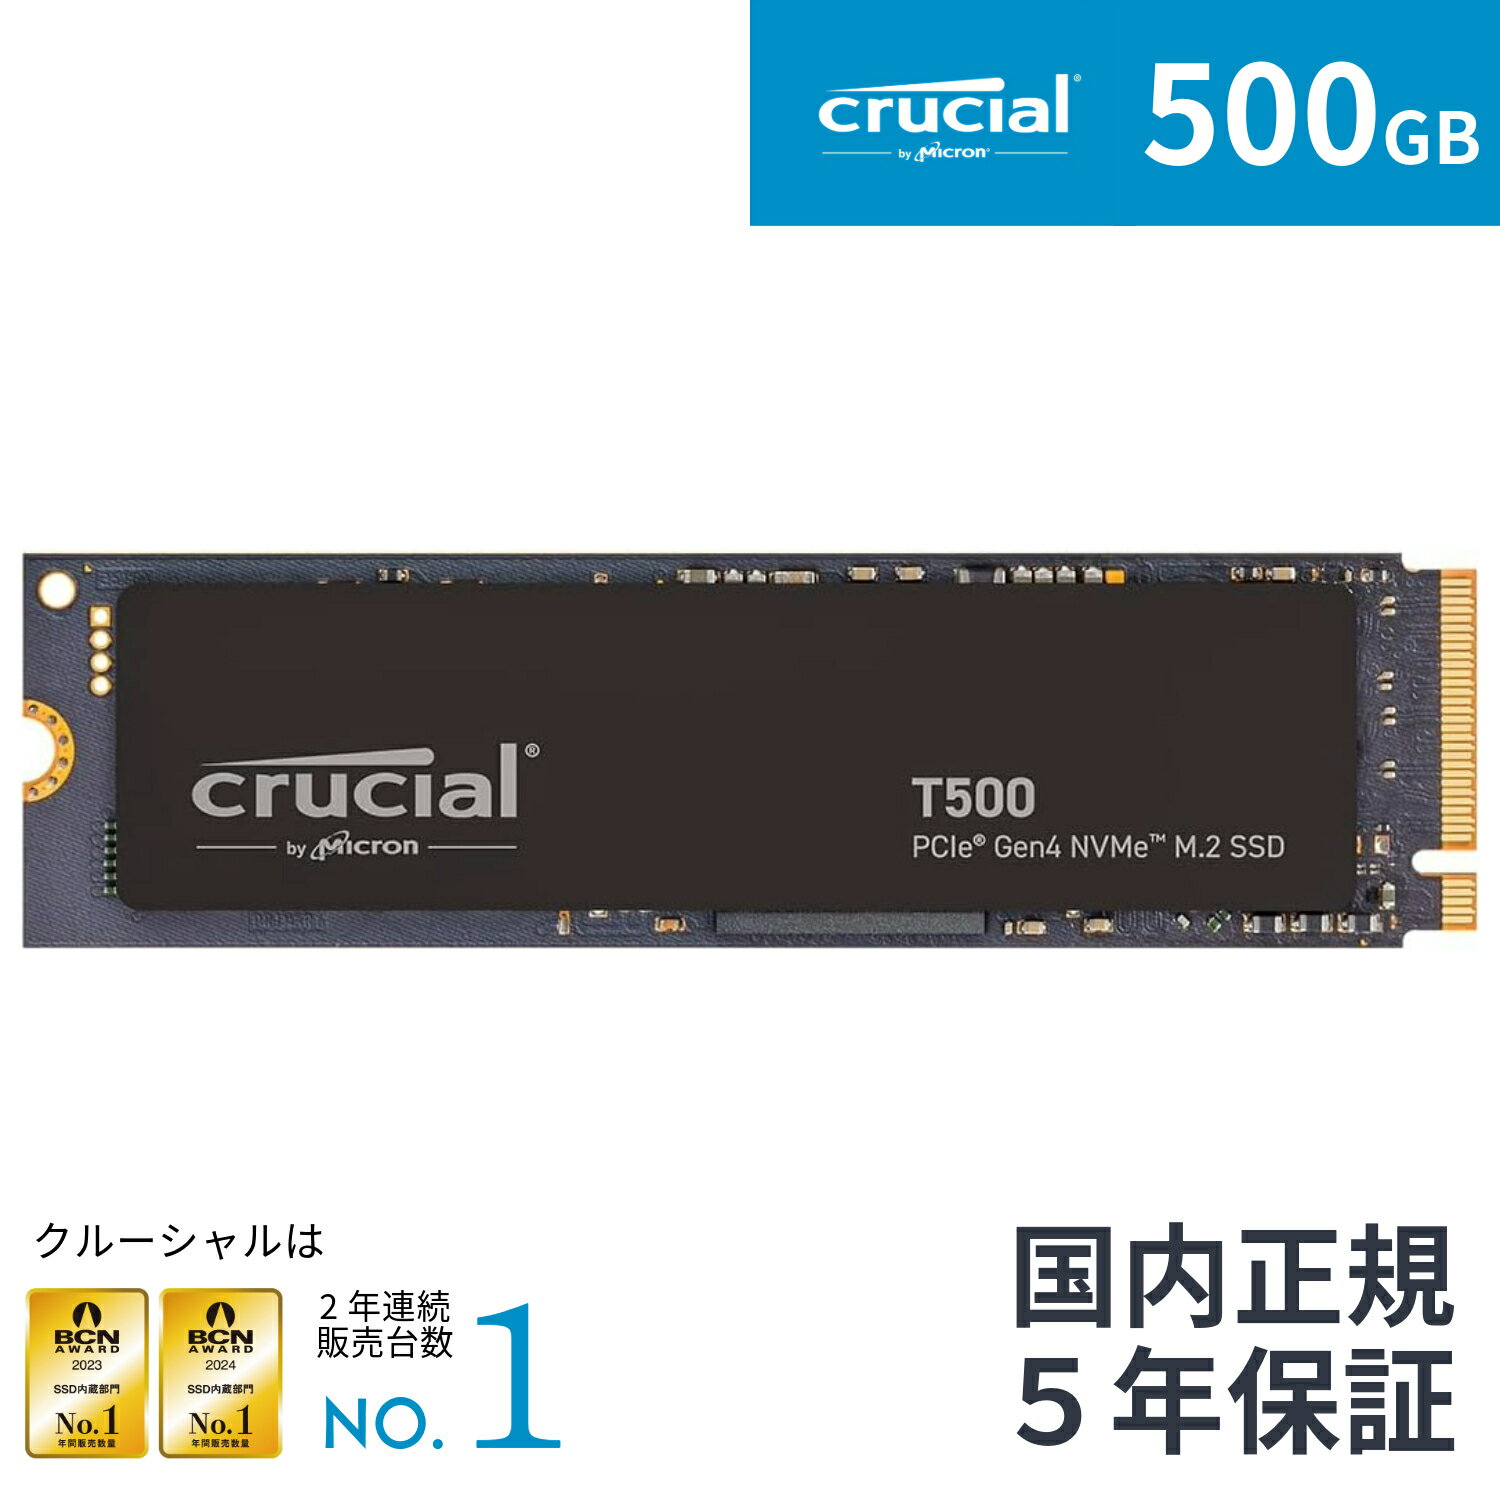 【国内正規流通品】Crucial T500 【新